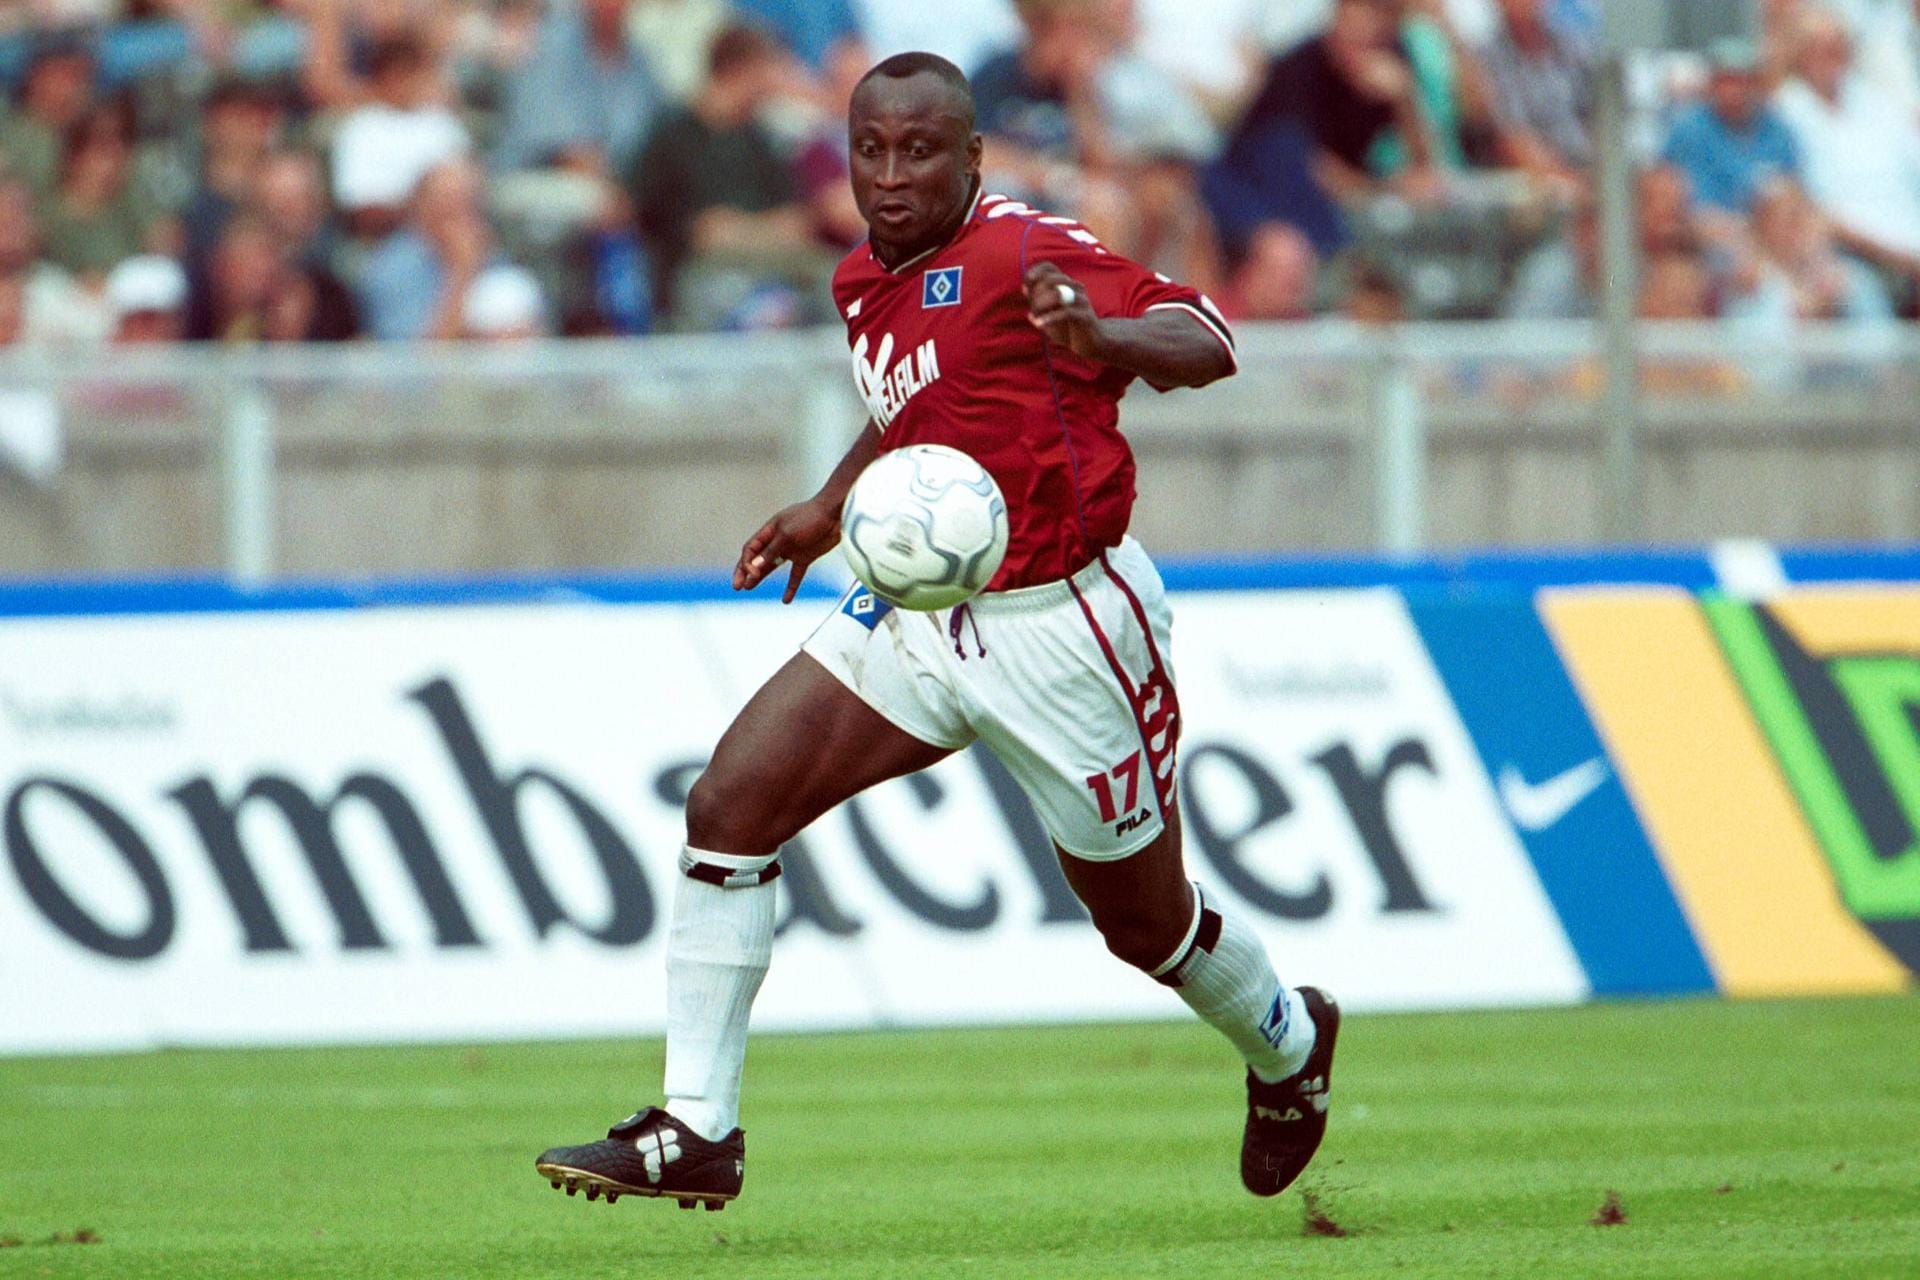 Anthony Yeboah (1997-2001): Der ehemalige ghanaische Nationalspieler beendete 2002 seine Fußballer-Karriere. Aktuell ist er Berater beim ghanaischen Fußballverband und betreibt zwei Hotels in seinem Heimatland.